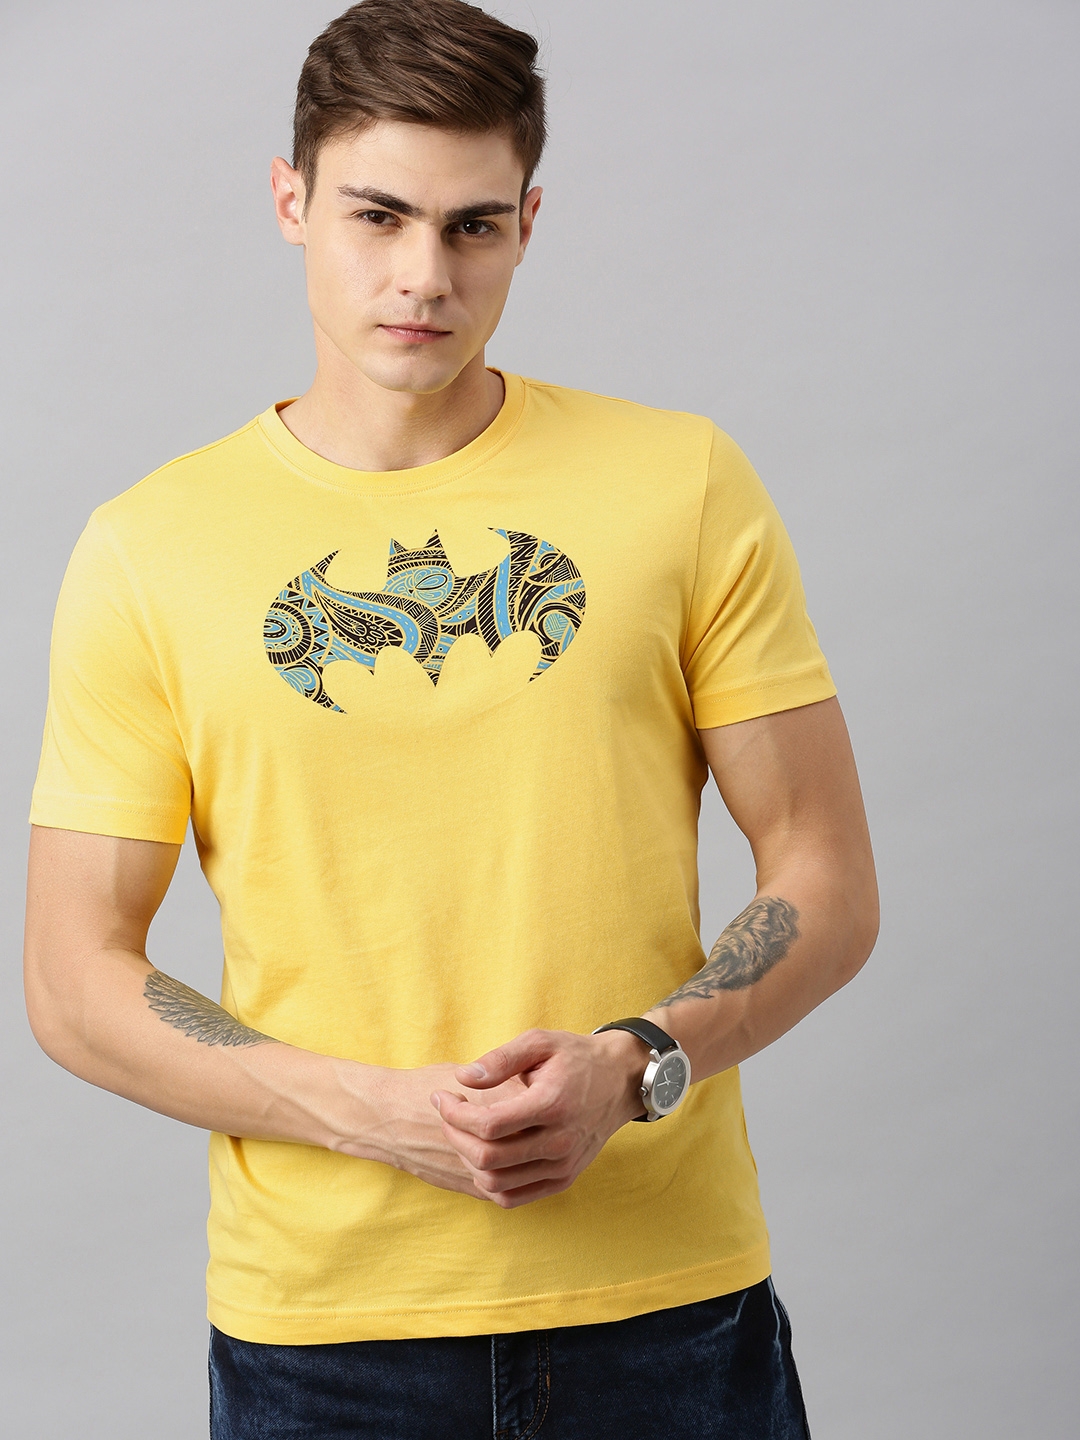 HUETRAP | Batman Yellow and Black Printed Rogue Round Neck T-Shirt